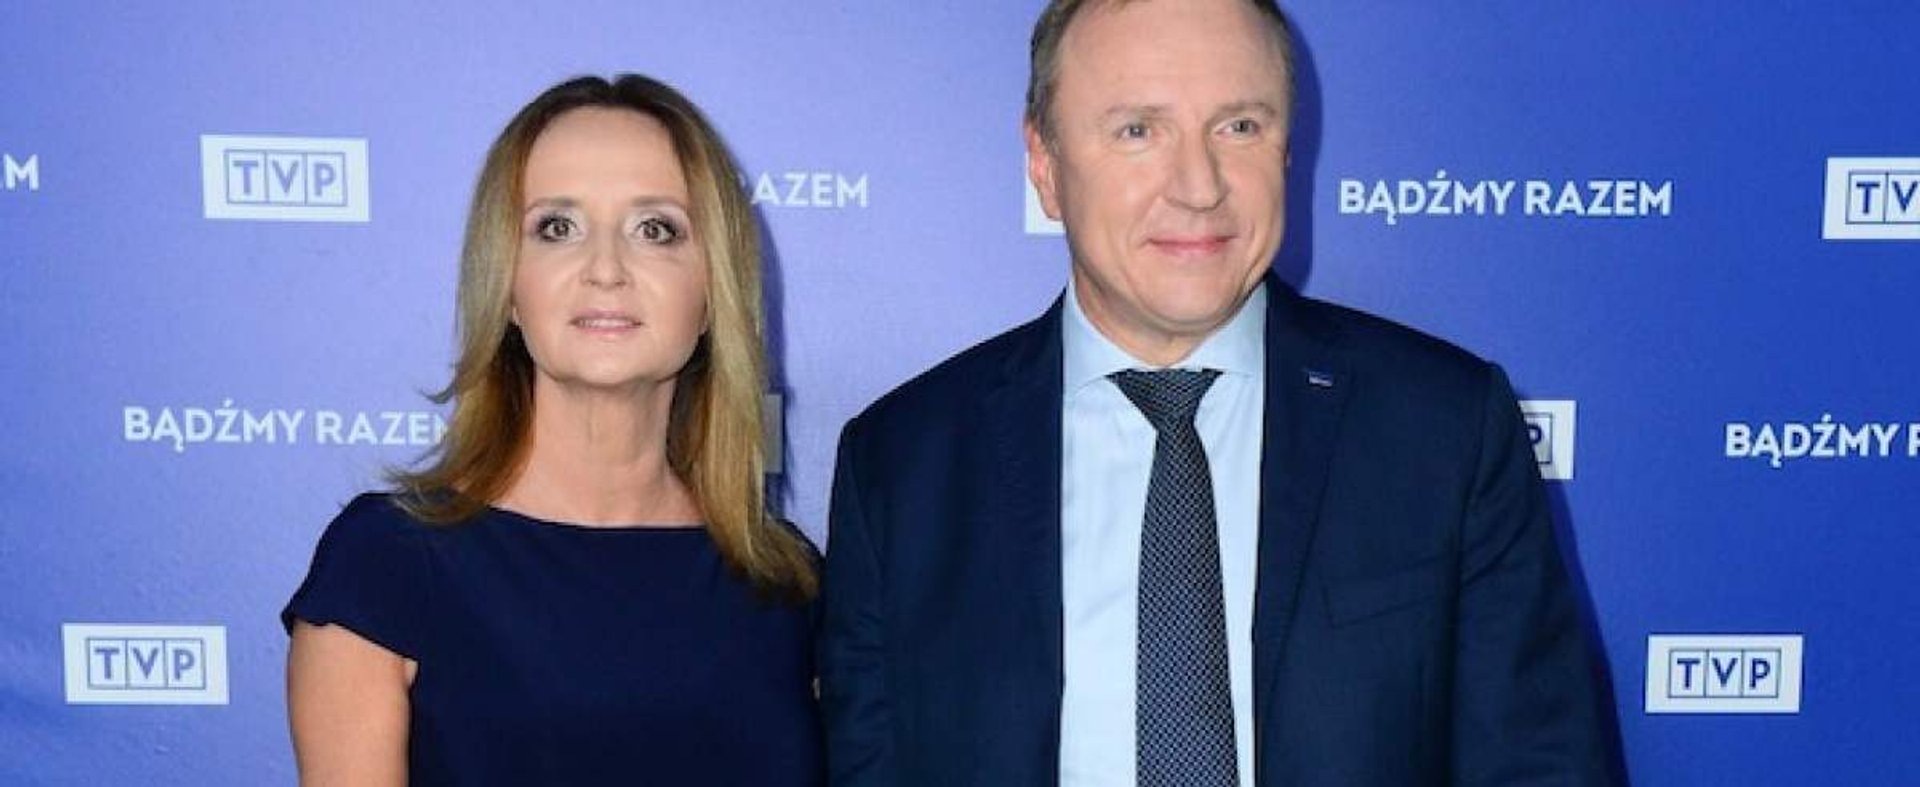 Szef TVP Jacek Kurski odpowiada na zarzuty dotyczące wyboru reprezentanta Polski na Eurowizję